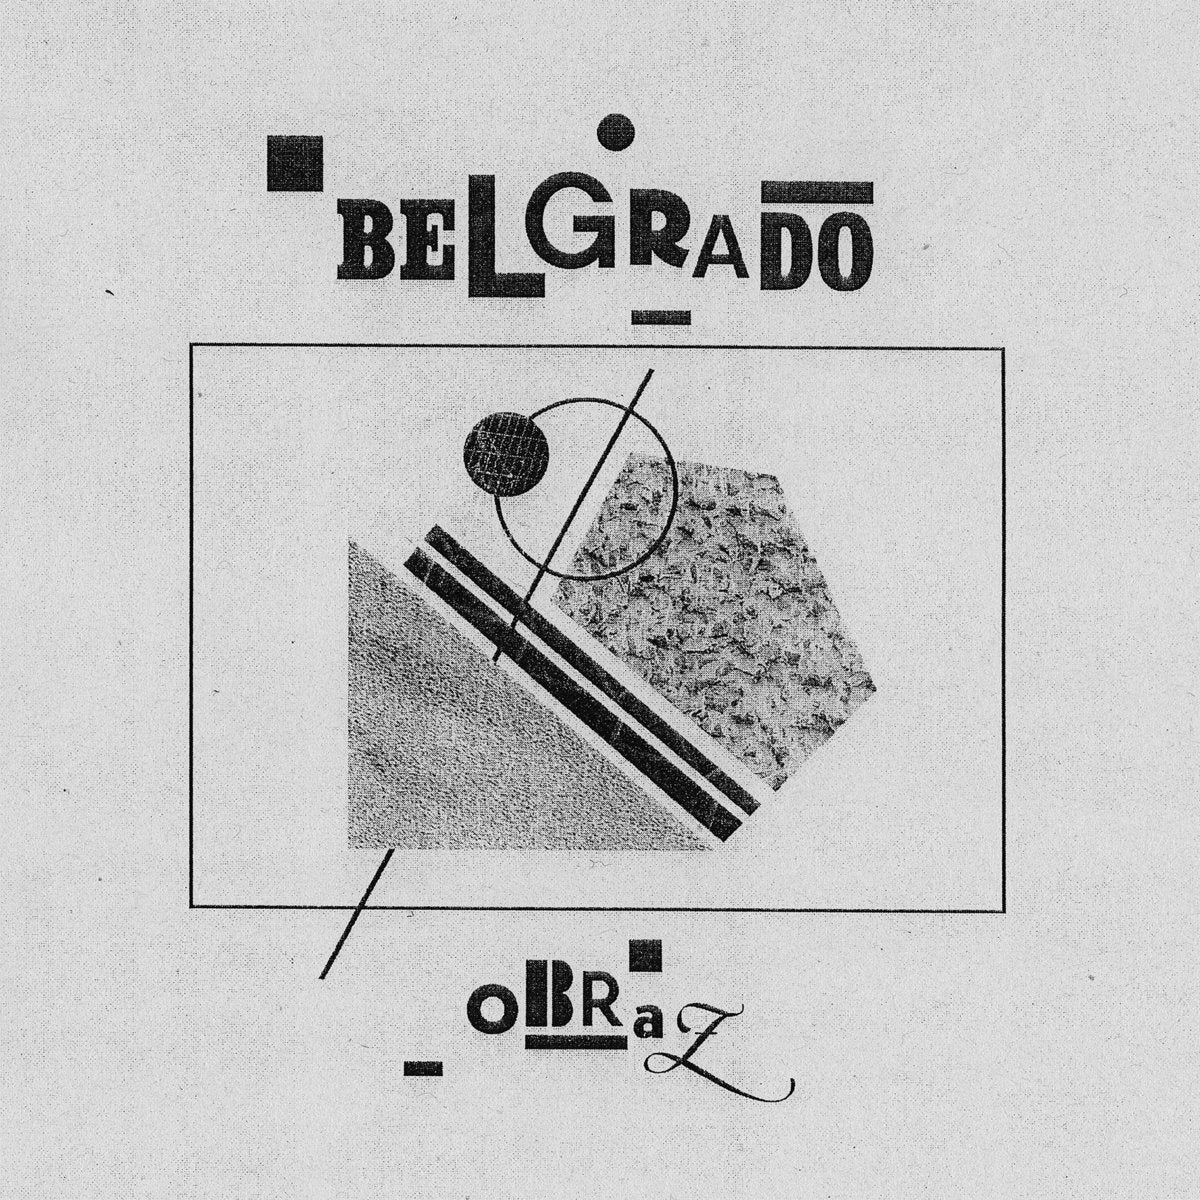 BELGRADO - OBRAZ  Vinyl LP